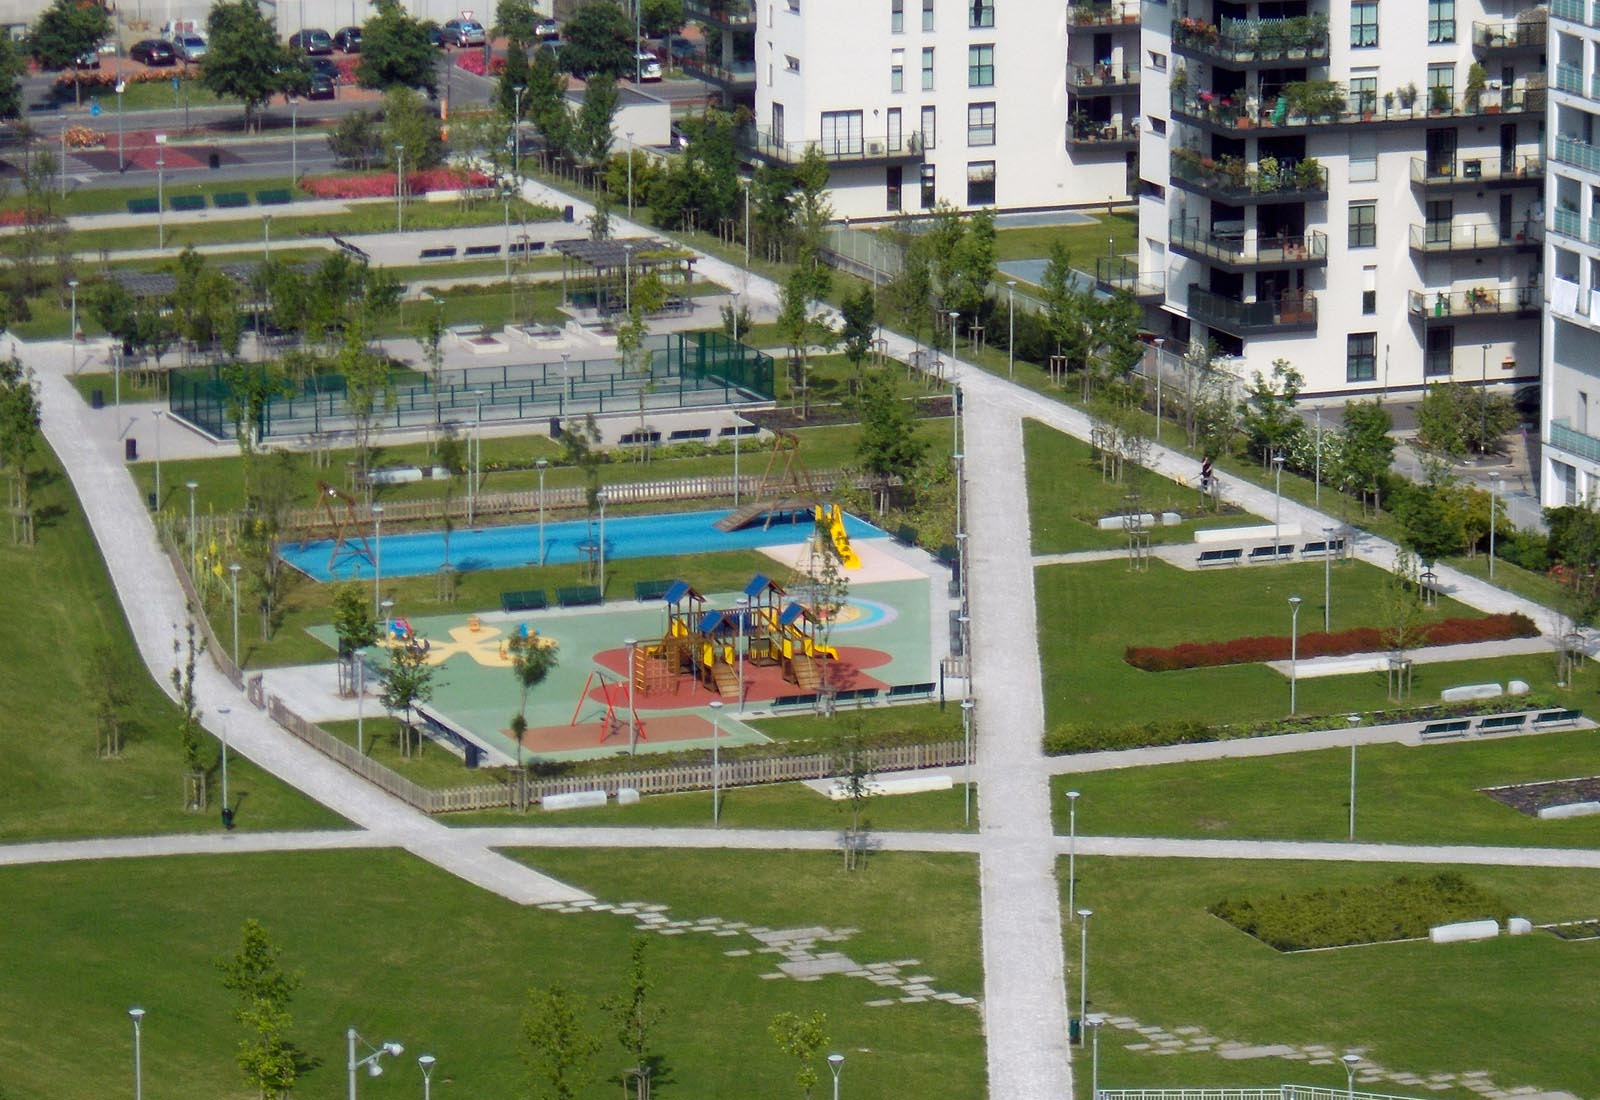 Parco Adriano - L'area giochi verso via Gassman